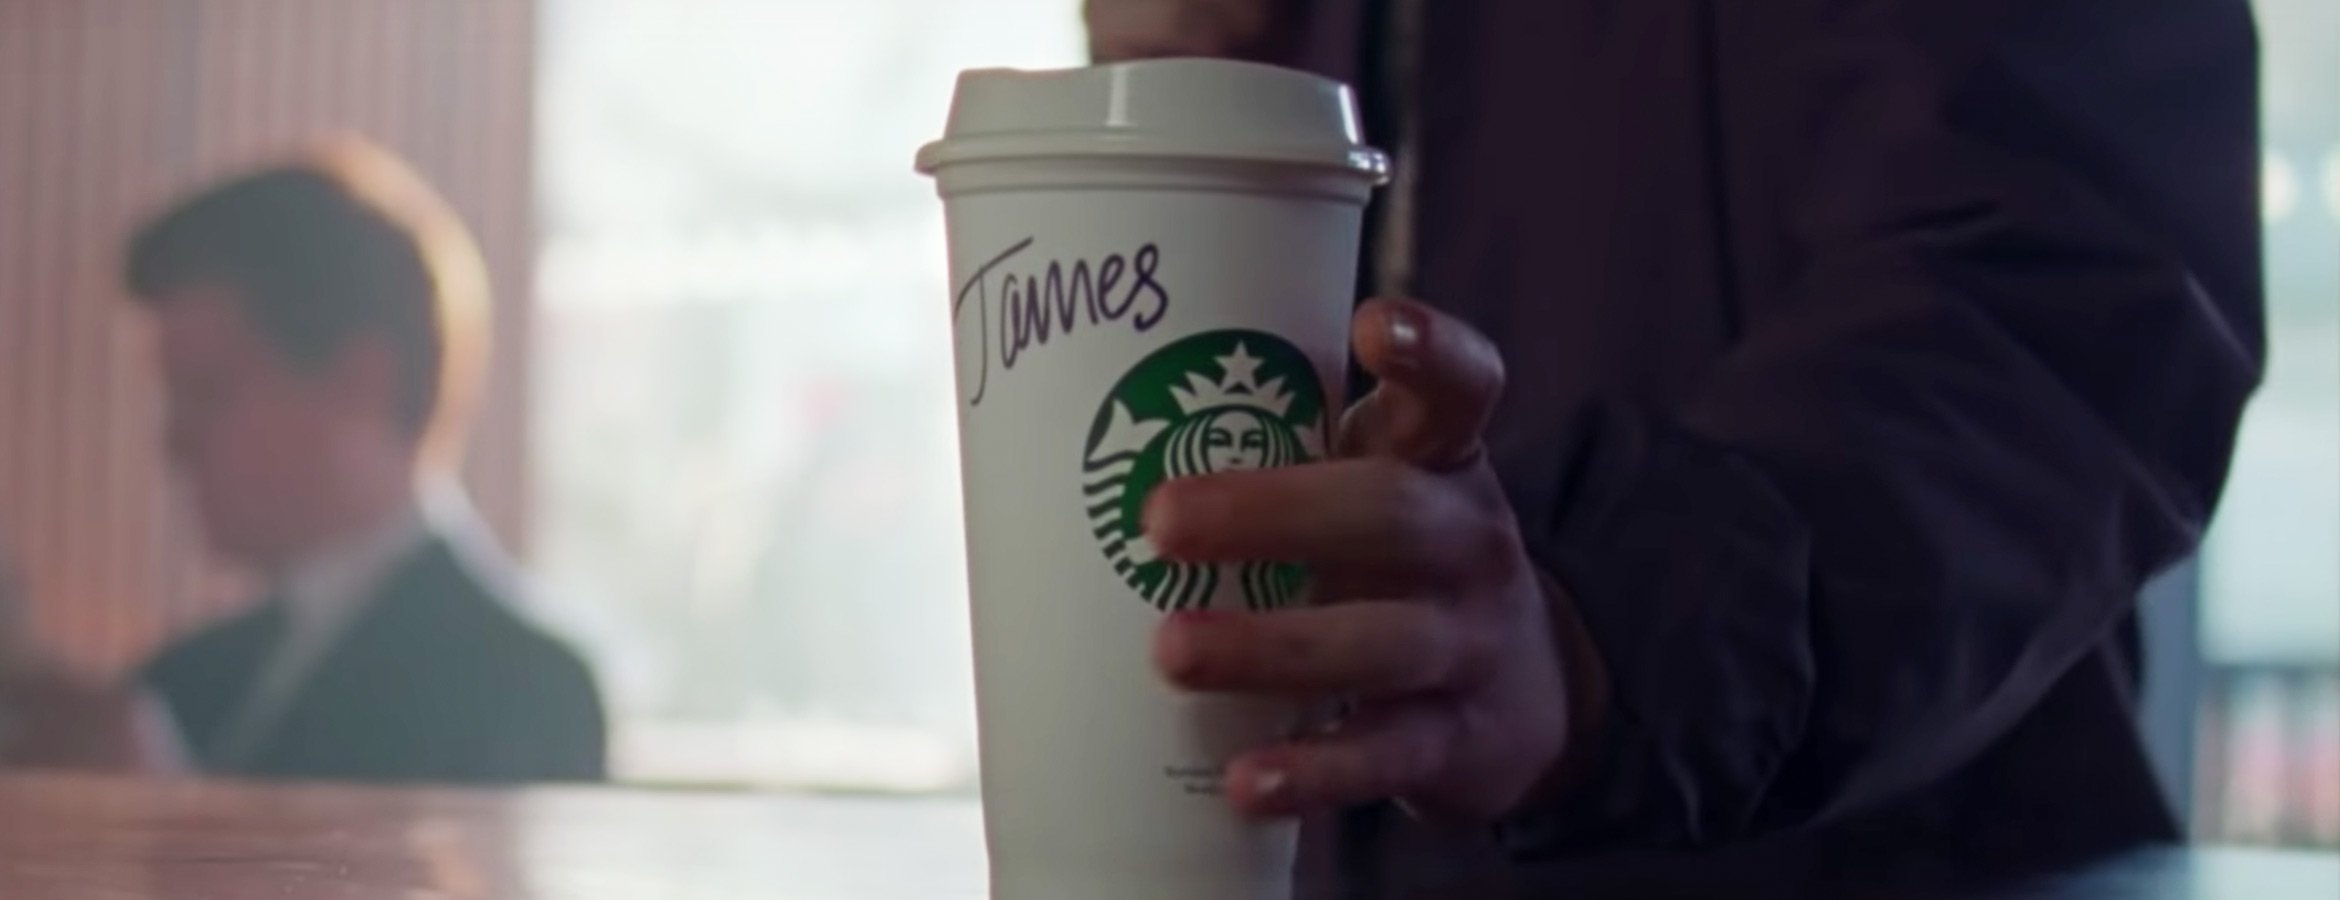 #whatsyourname, la campagne inclusive de Starbucks